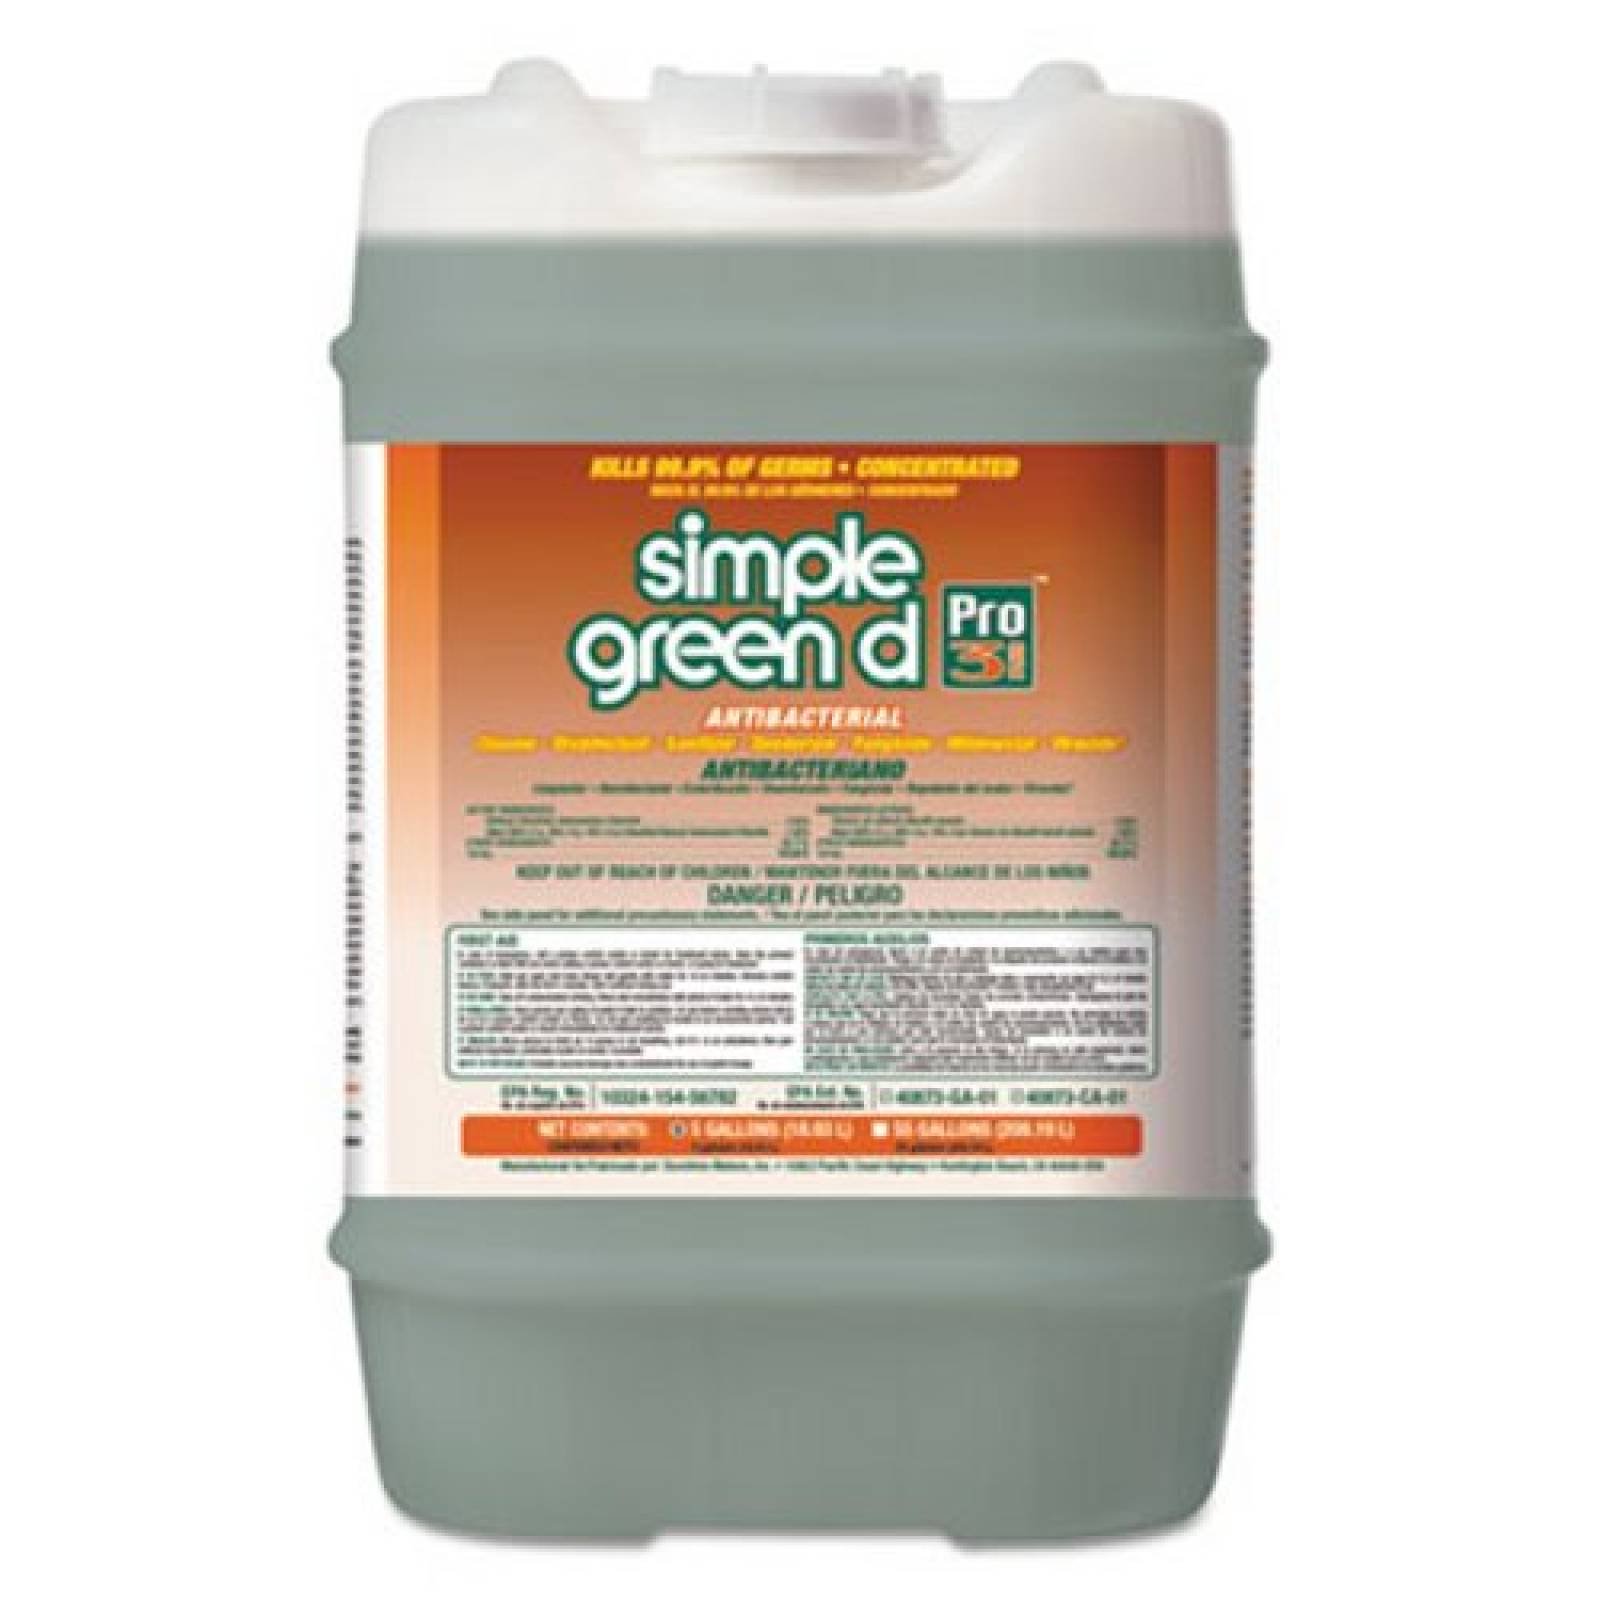 Simple Green D Pro 3 Plus Disinfectant 5 Gallon Pail 